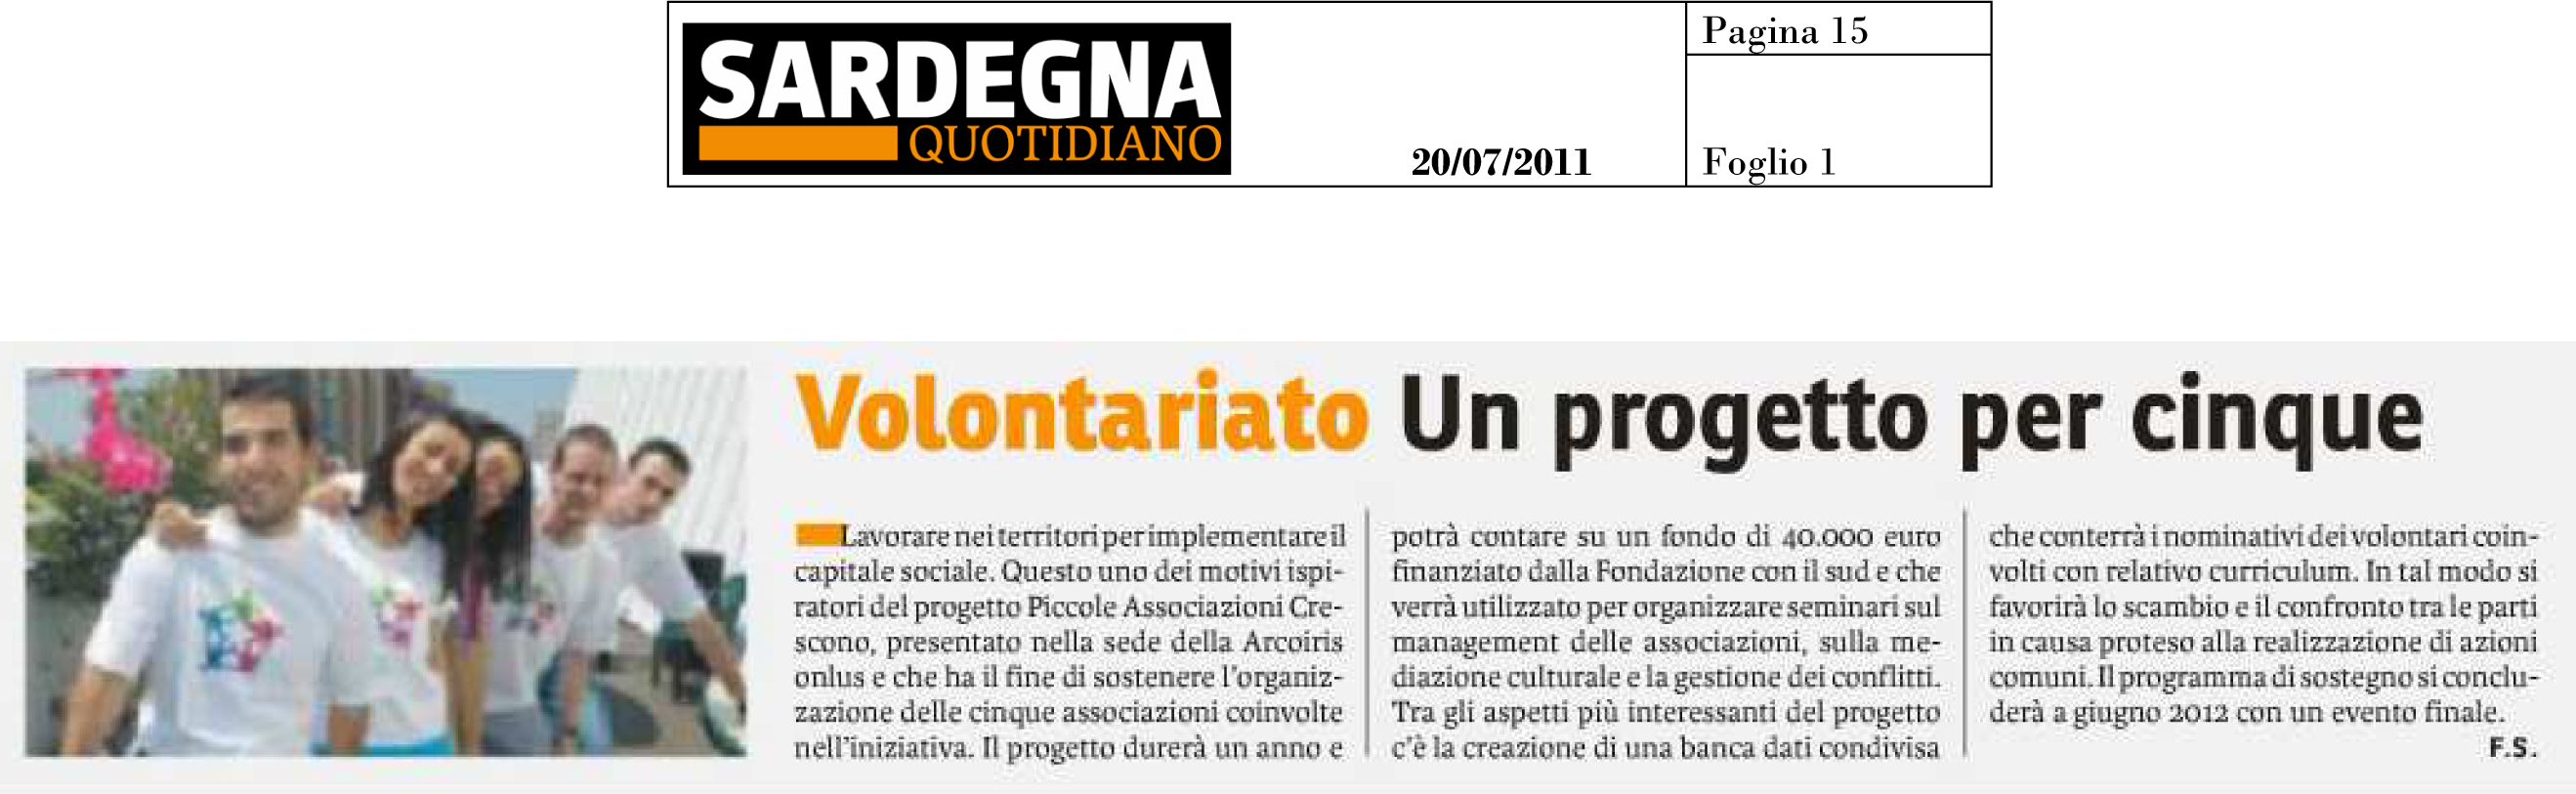 2011-07-20 - Sardegna Quotidiano